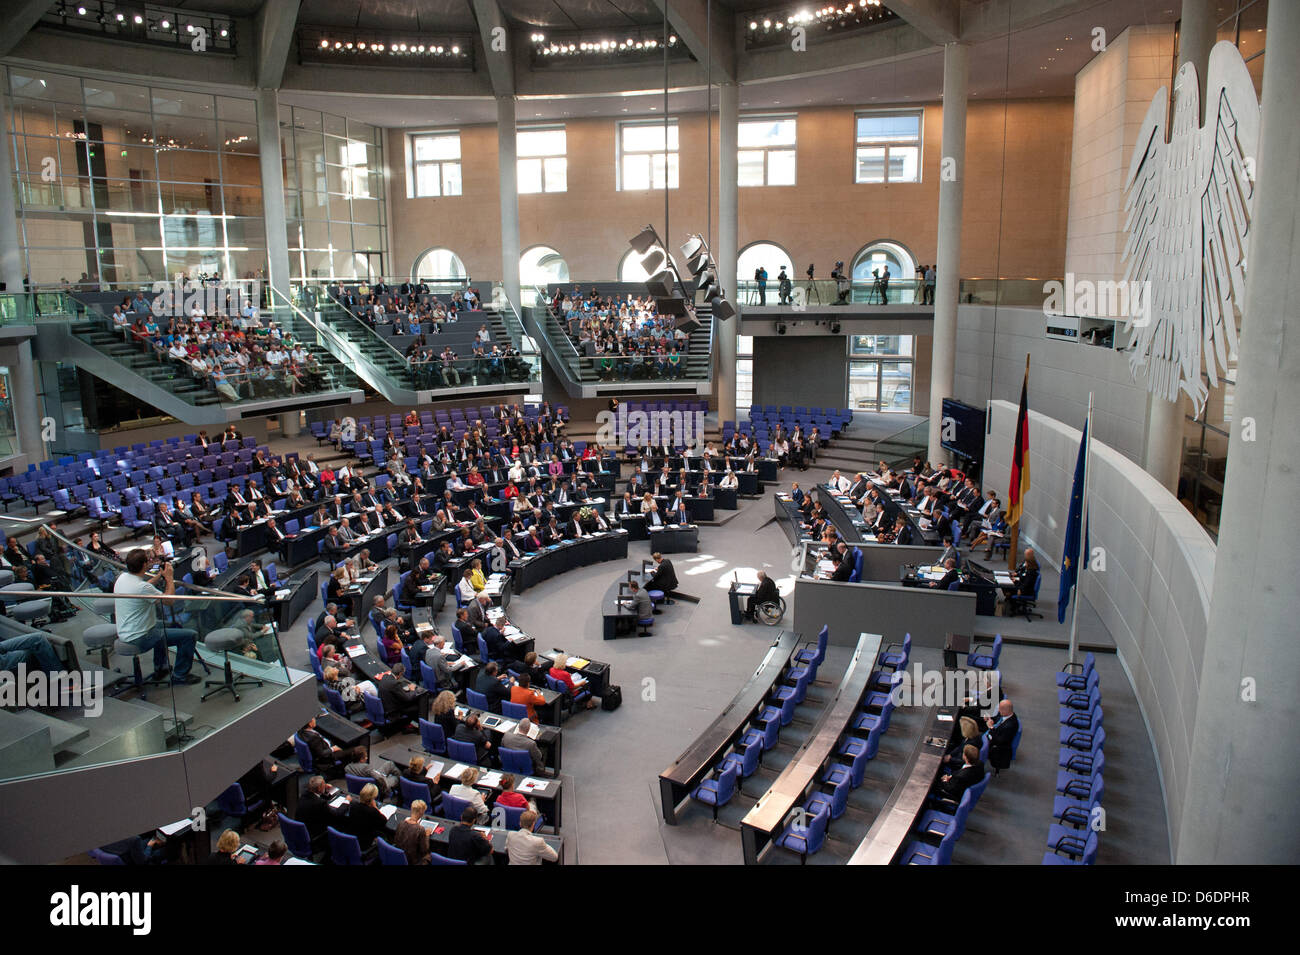 Le ministre allemand des Finances, Wolfgang Schaeuble prononce une allocution lors d'une réunion du budget semaine au Bundestag allemand à Berlin, Allemagne, 11 septembre 2012. Le parlement a commencé ses consultations sur le budget fédéral. Photo : MAURIZIO GAMBARINI Banque D'Images